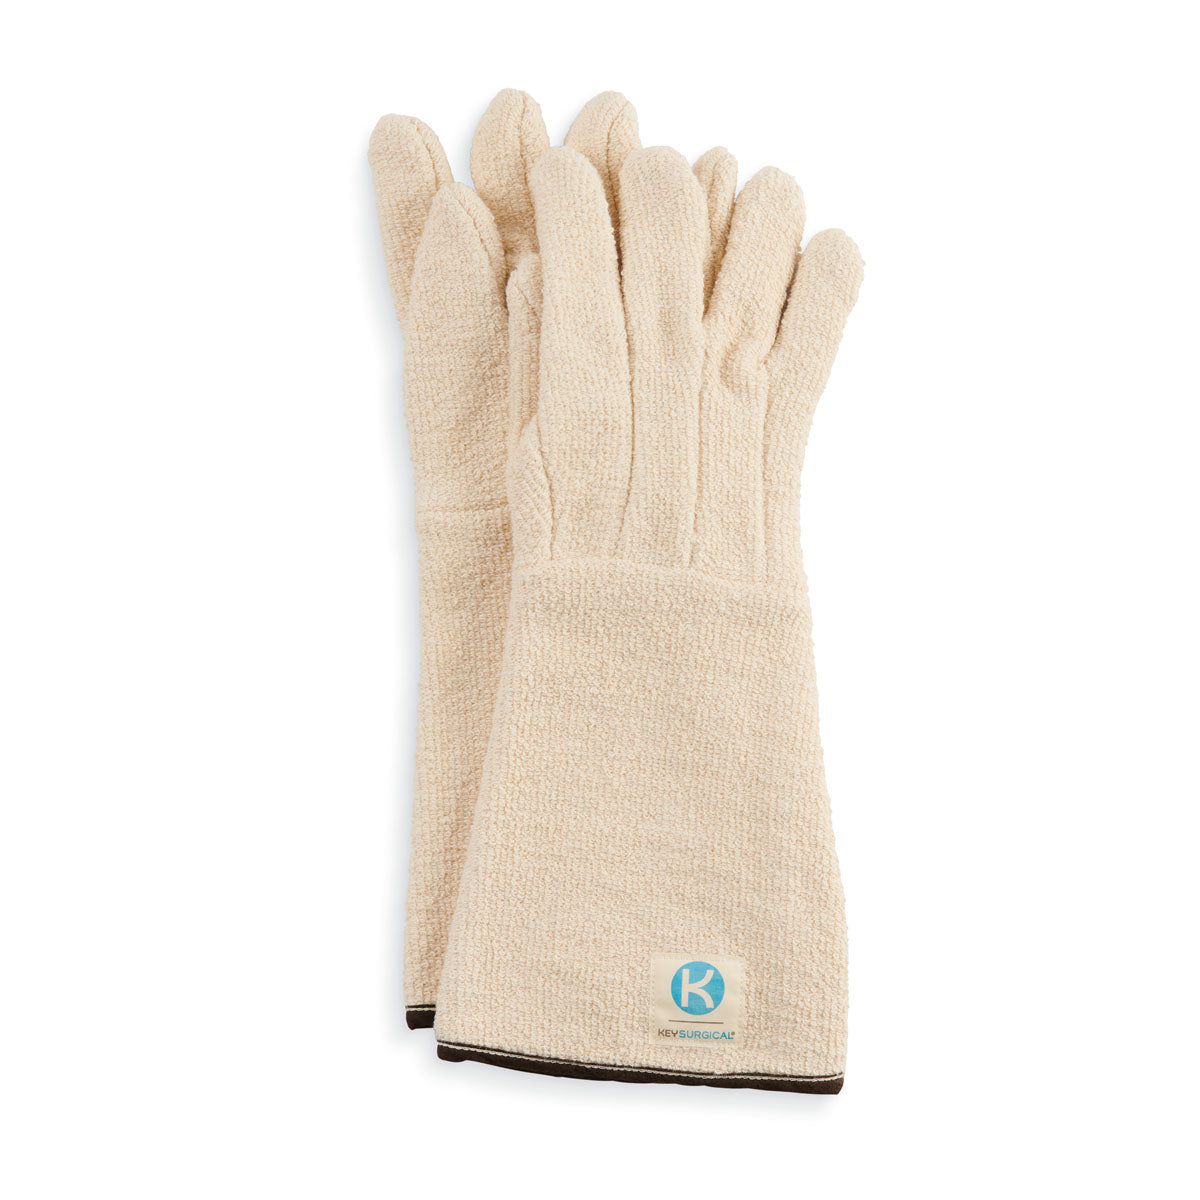 Steriliser Gloves - 17 Inch Long, 2/PR